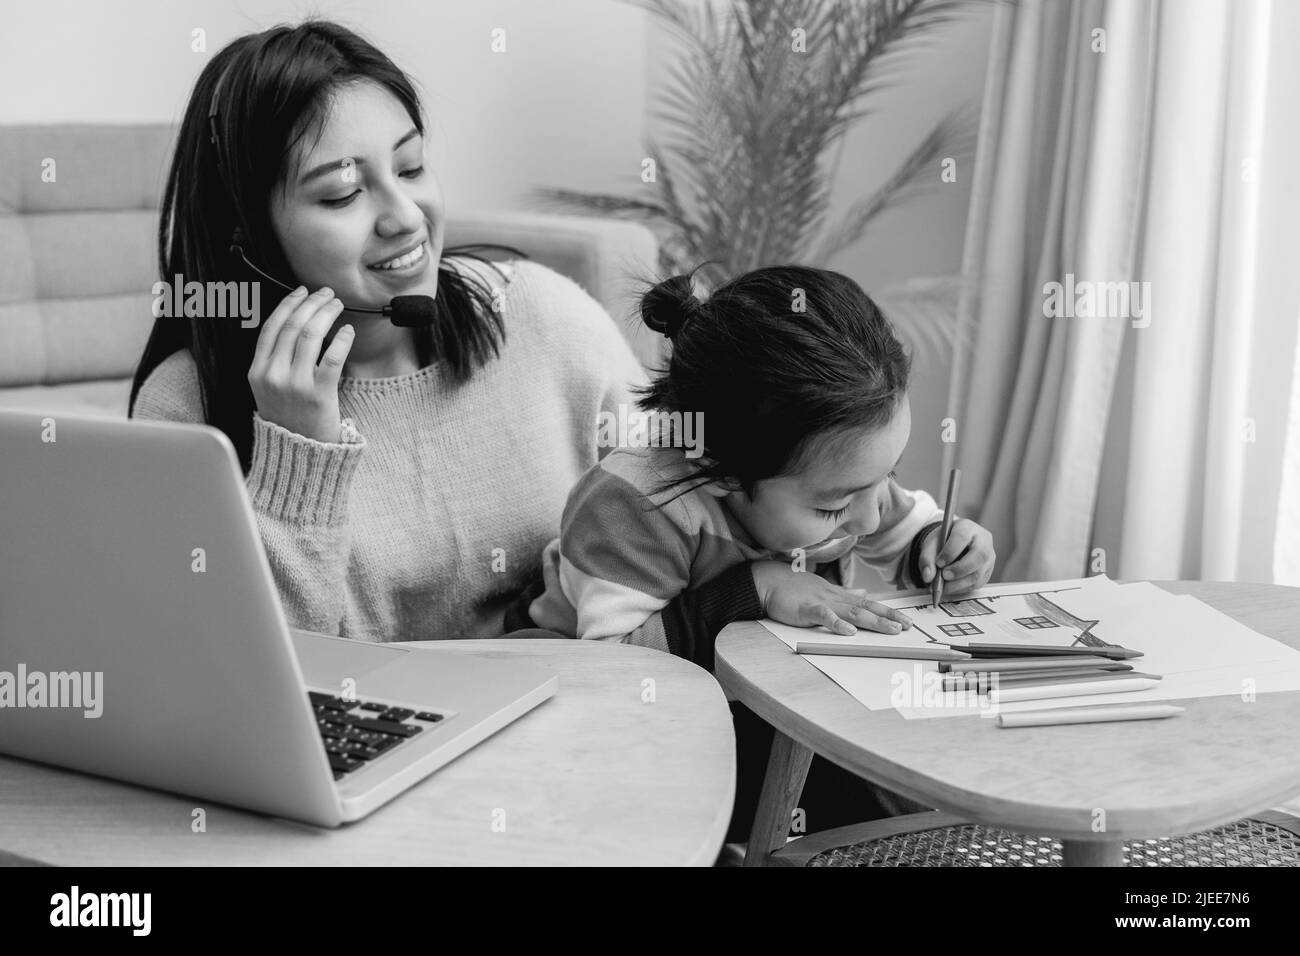 Glückliche asiatische Mutter arbeitet zu Hause mit ihrem Kind Sohn - Familienkonzept - Schwarz-Weiß-Schnitt Stockfoto